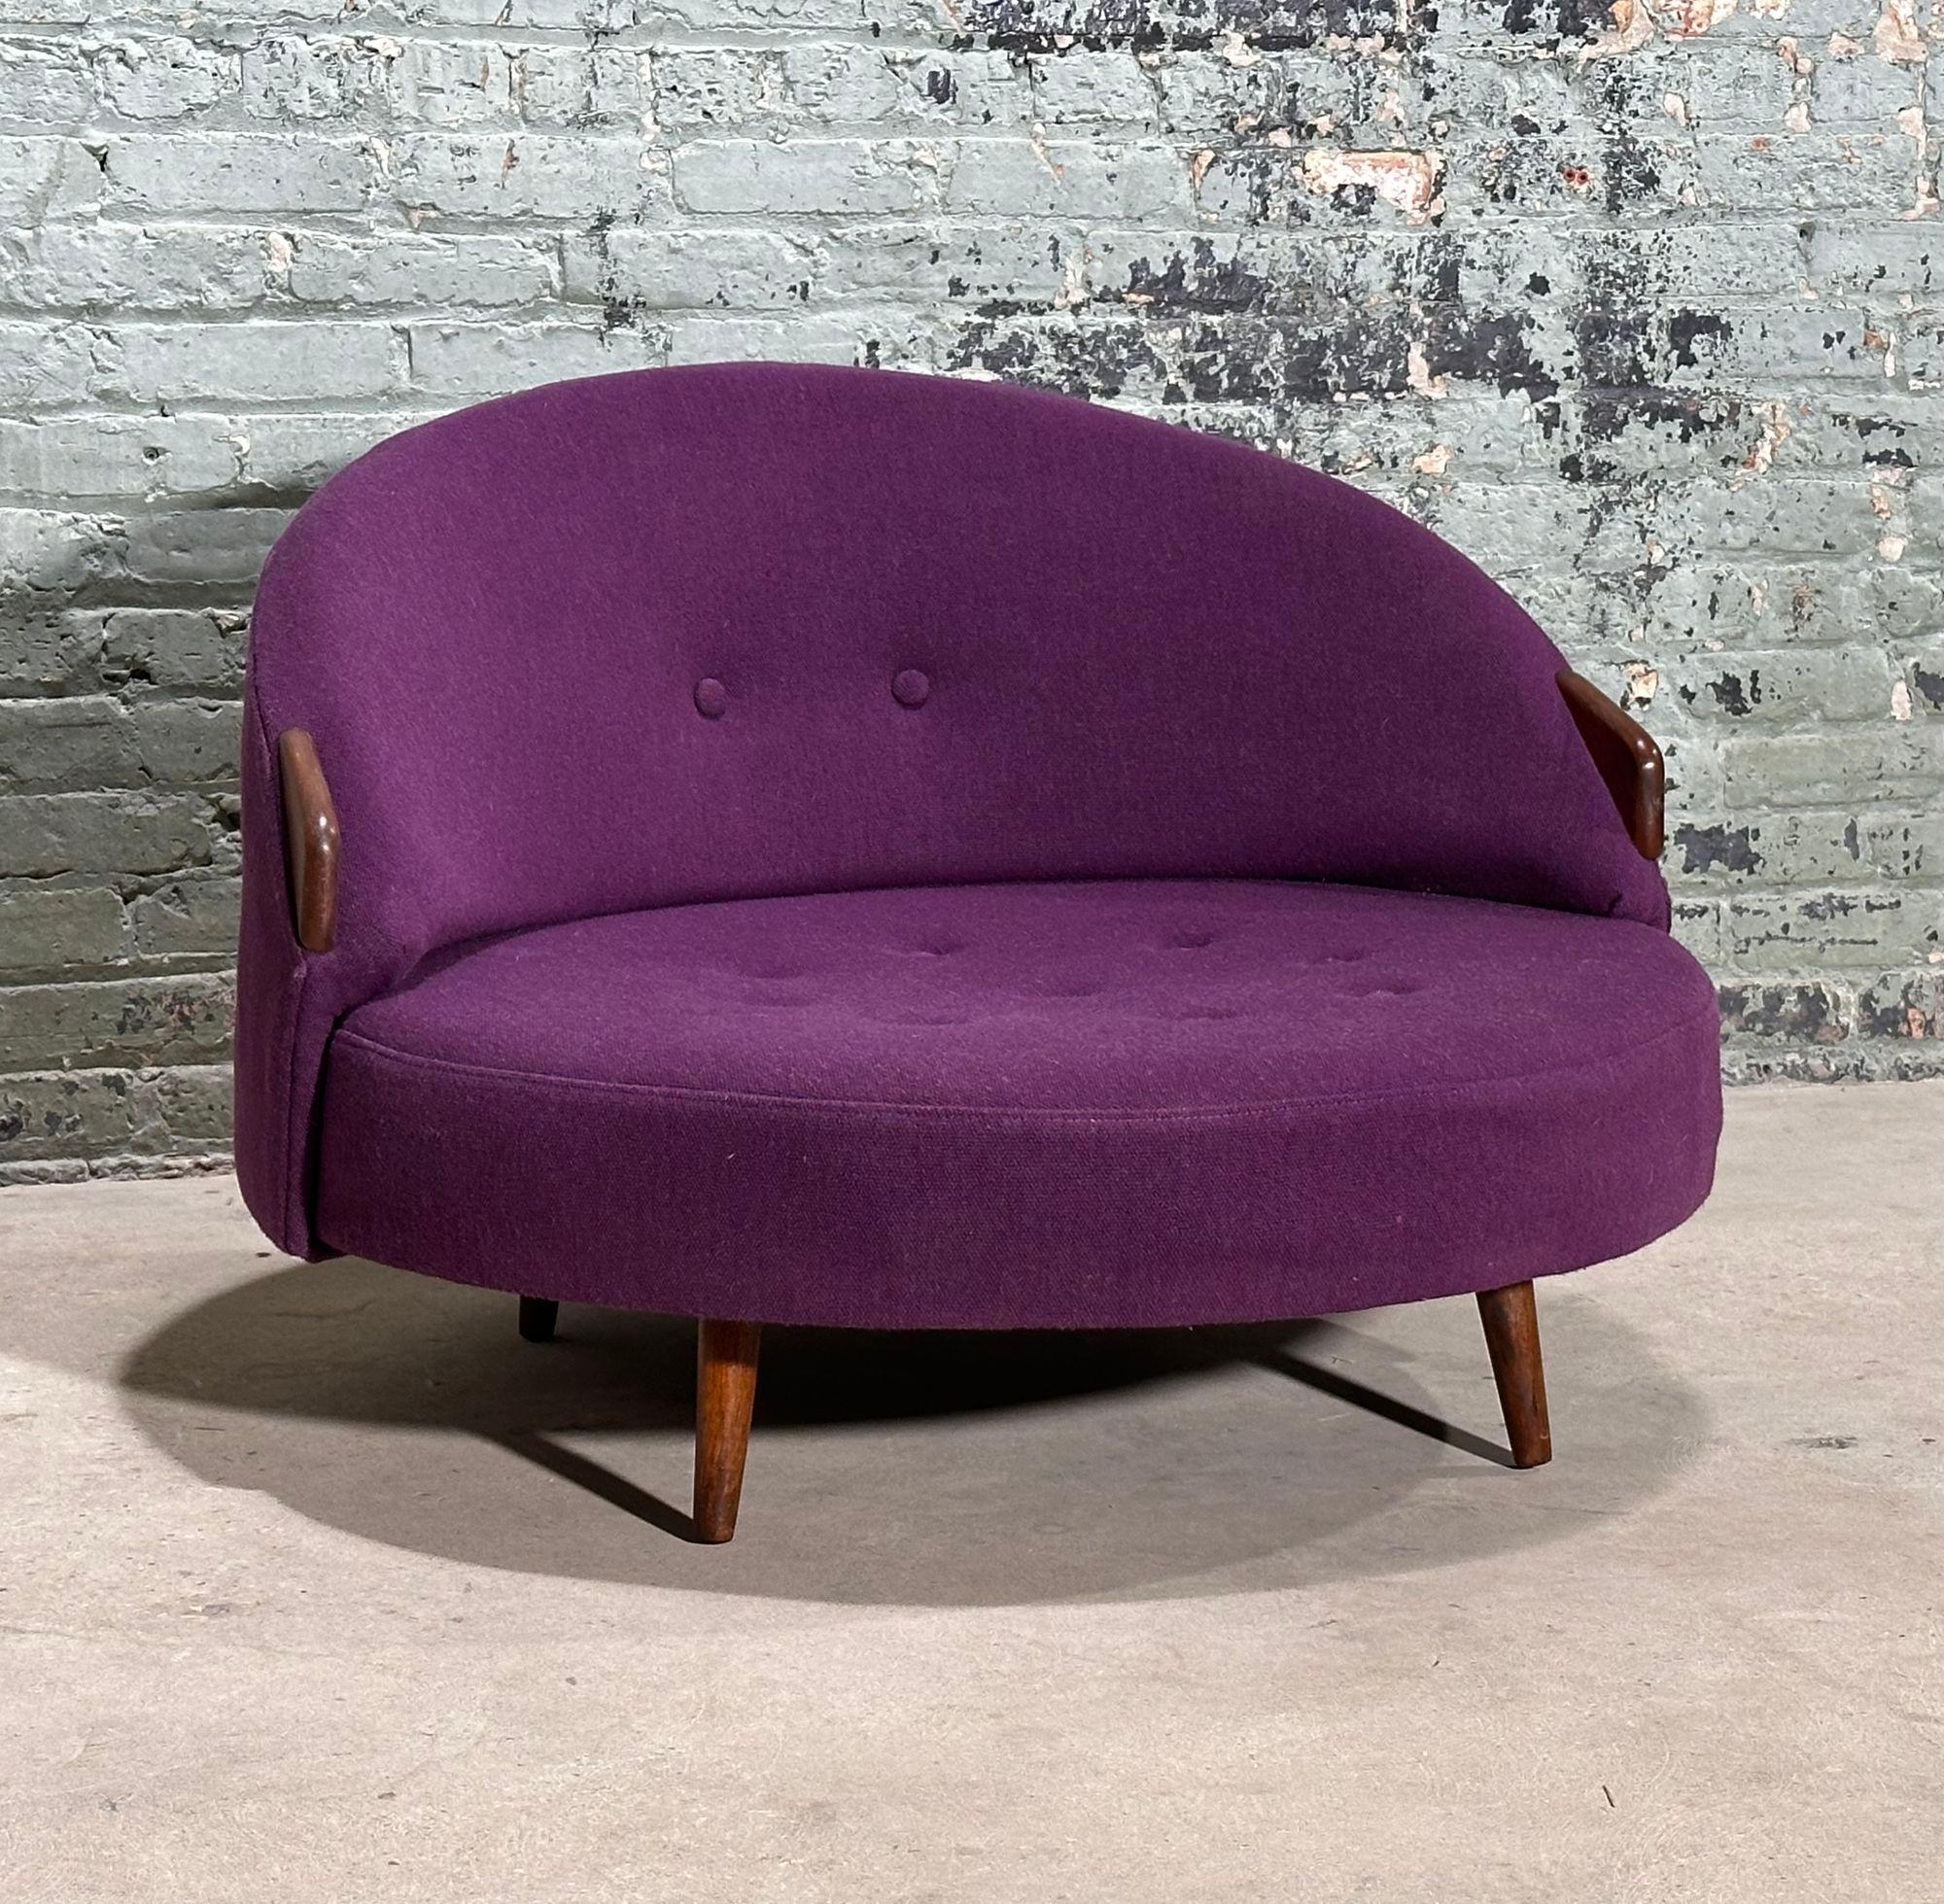 Adrian Pearsall Havanna Lounge Chair, 1970. Original-Polsterung in ausgezeichnetem Zustand.
Maße: 37